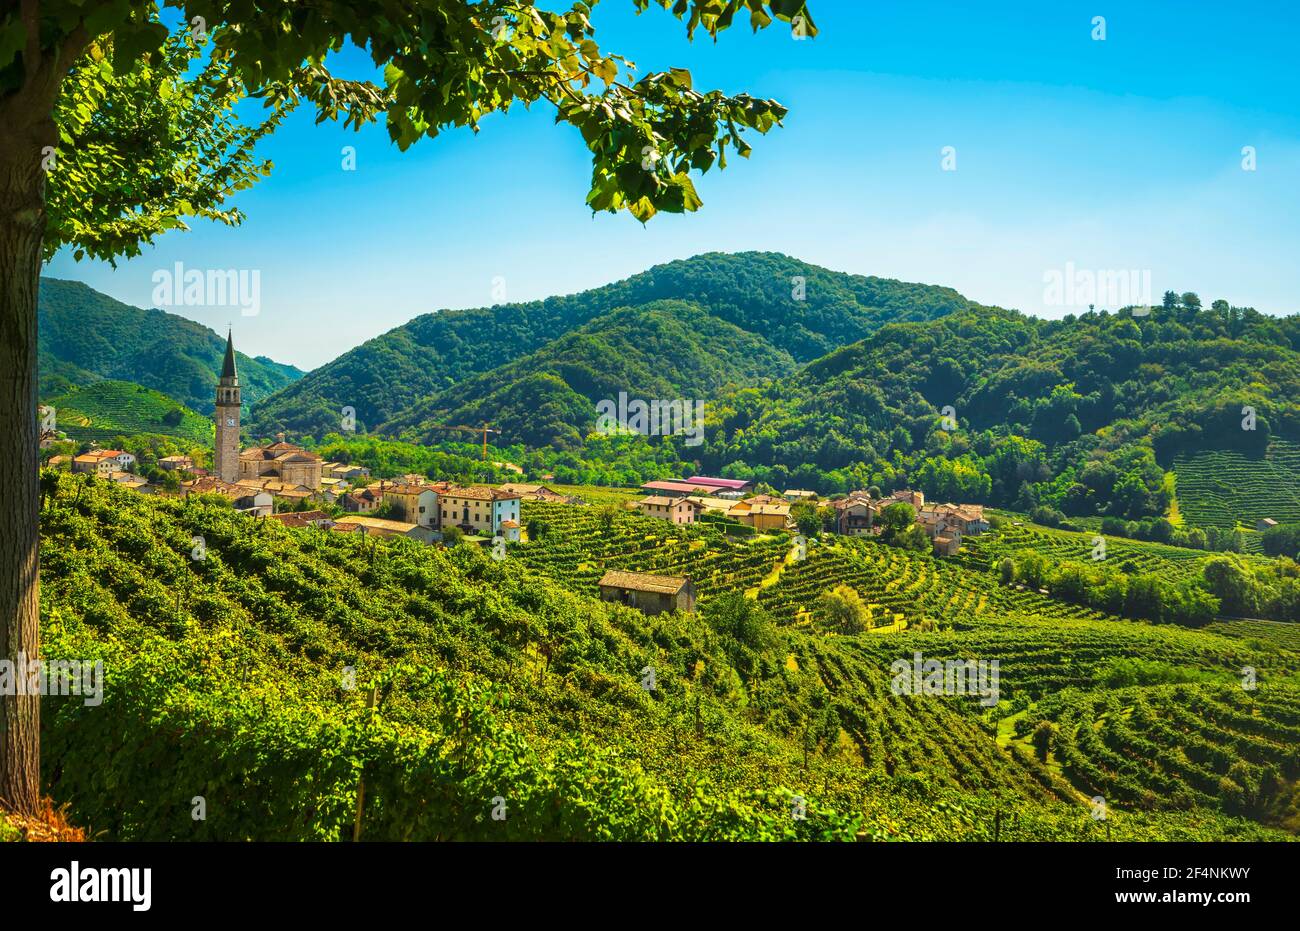 Collines de Prosecco, vignobles et village de Guia. Site de l'UNESCO. Valdobbiadene, Trévise, Vénétie, Italie, Europe. Banque D'Images